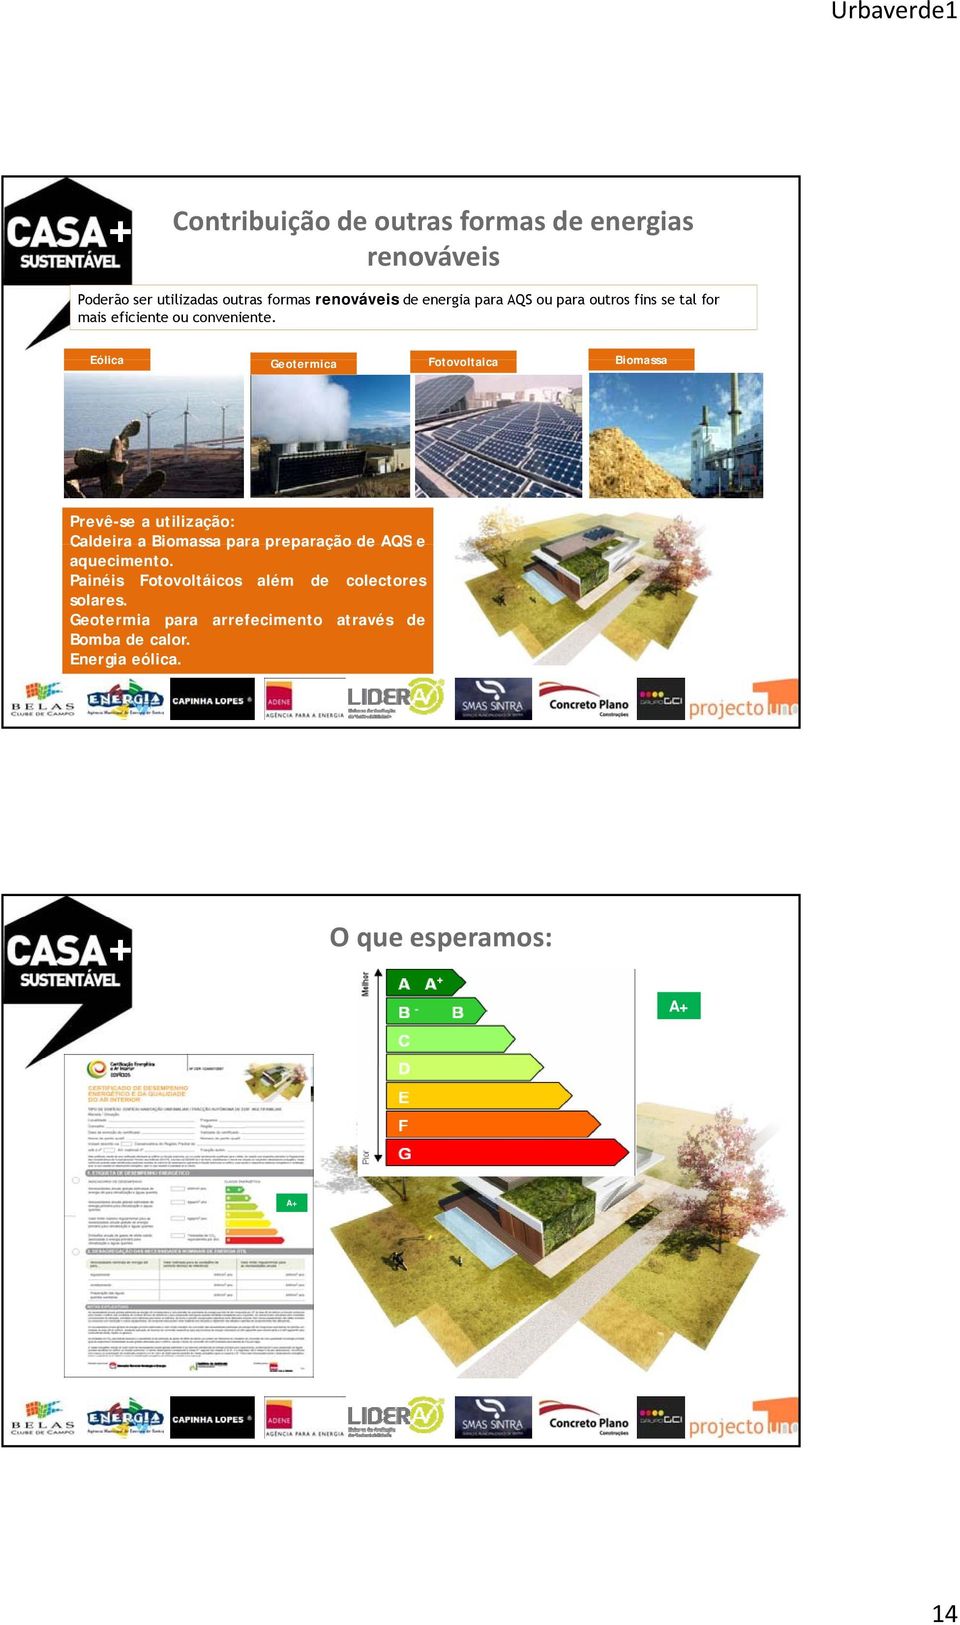 Eólica Geotermica Fotovoltaica Biomassa Prevê-se a utilização: Caldeira a Biomassa para preparação de AQS e